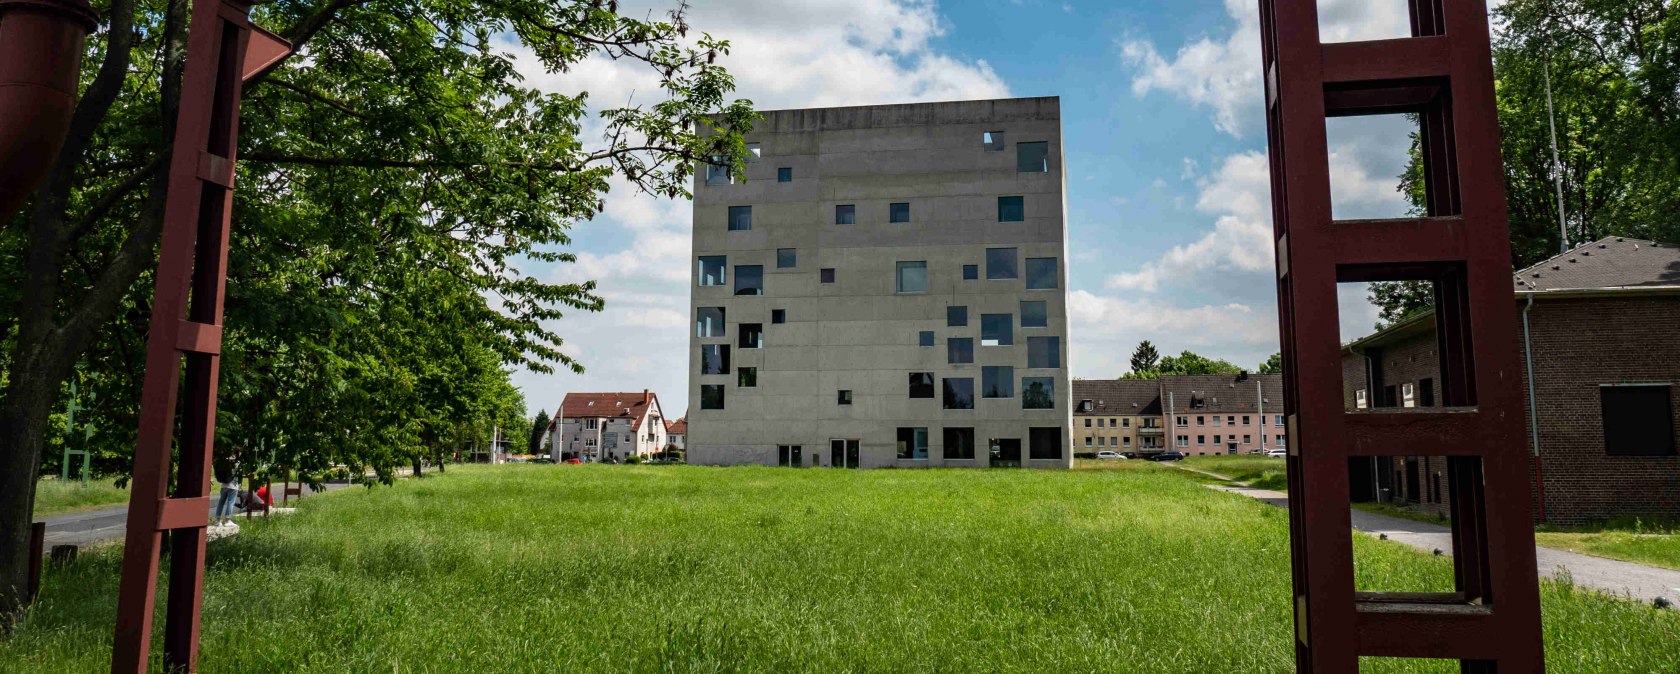 Sanaa-Gebäude, Unesco-Welterbe Zollverein , © Danny Giessner, Wahlheimat.Ruhr